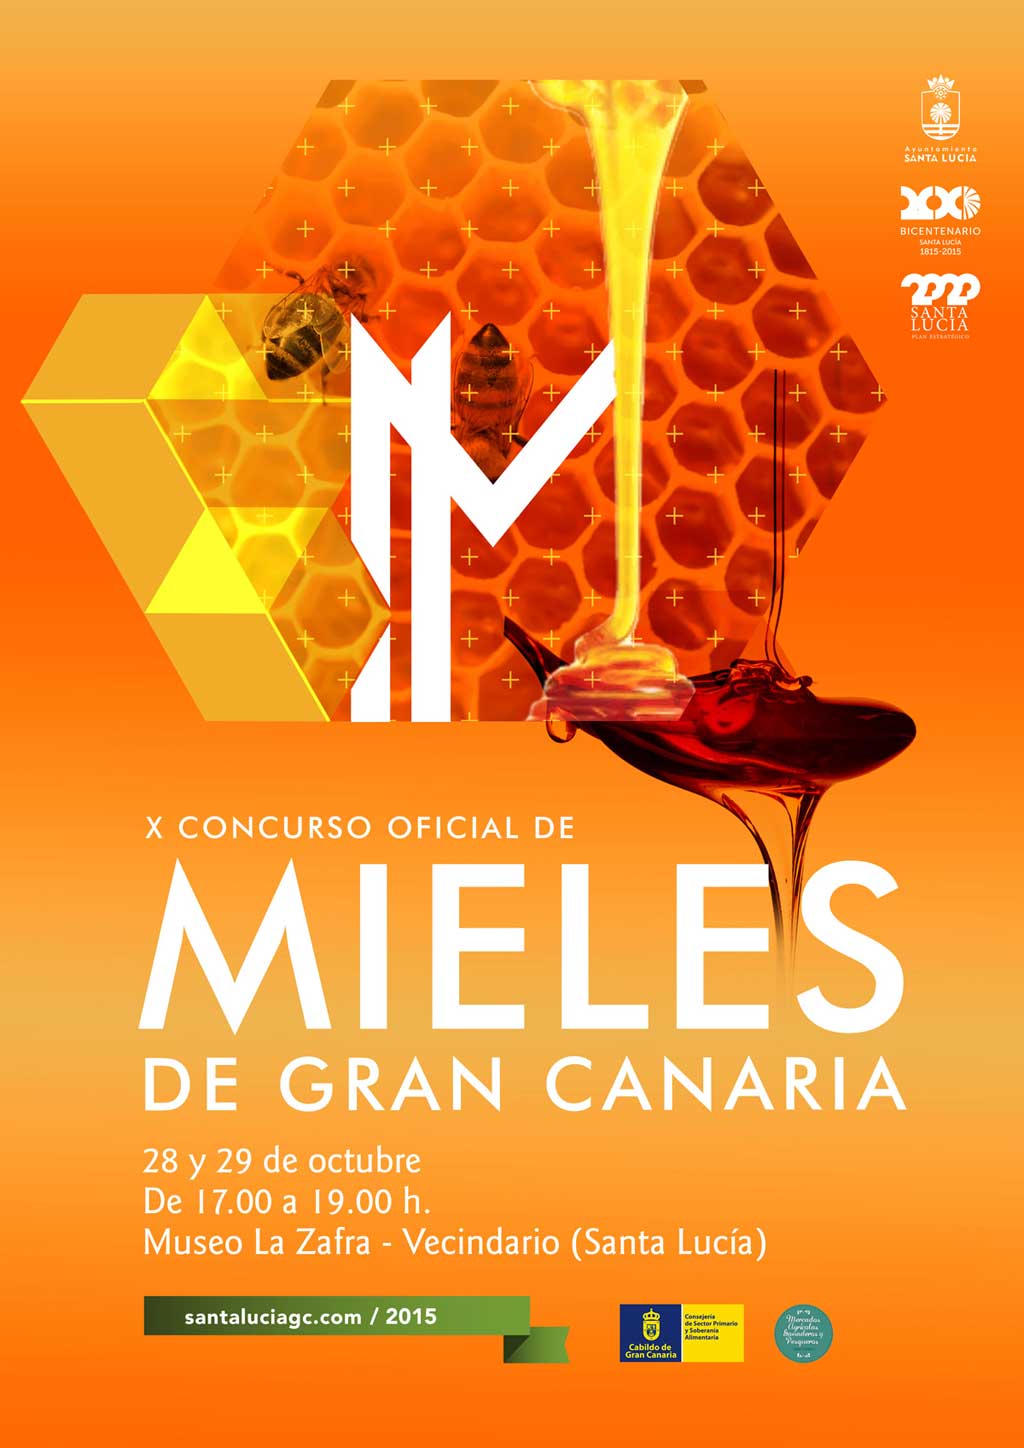 X Concurso Oficial de Mieles de Gran Canaria